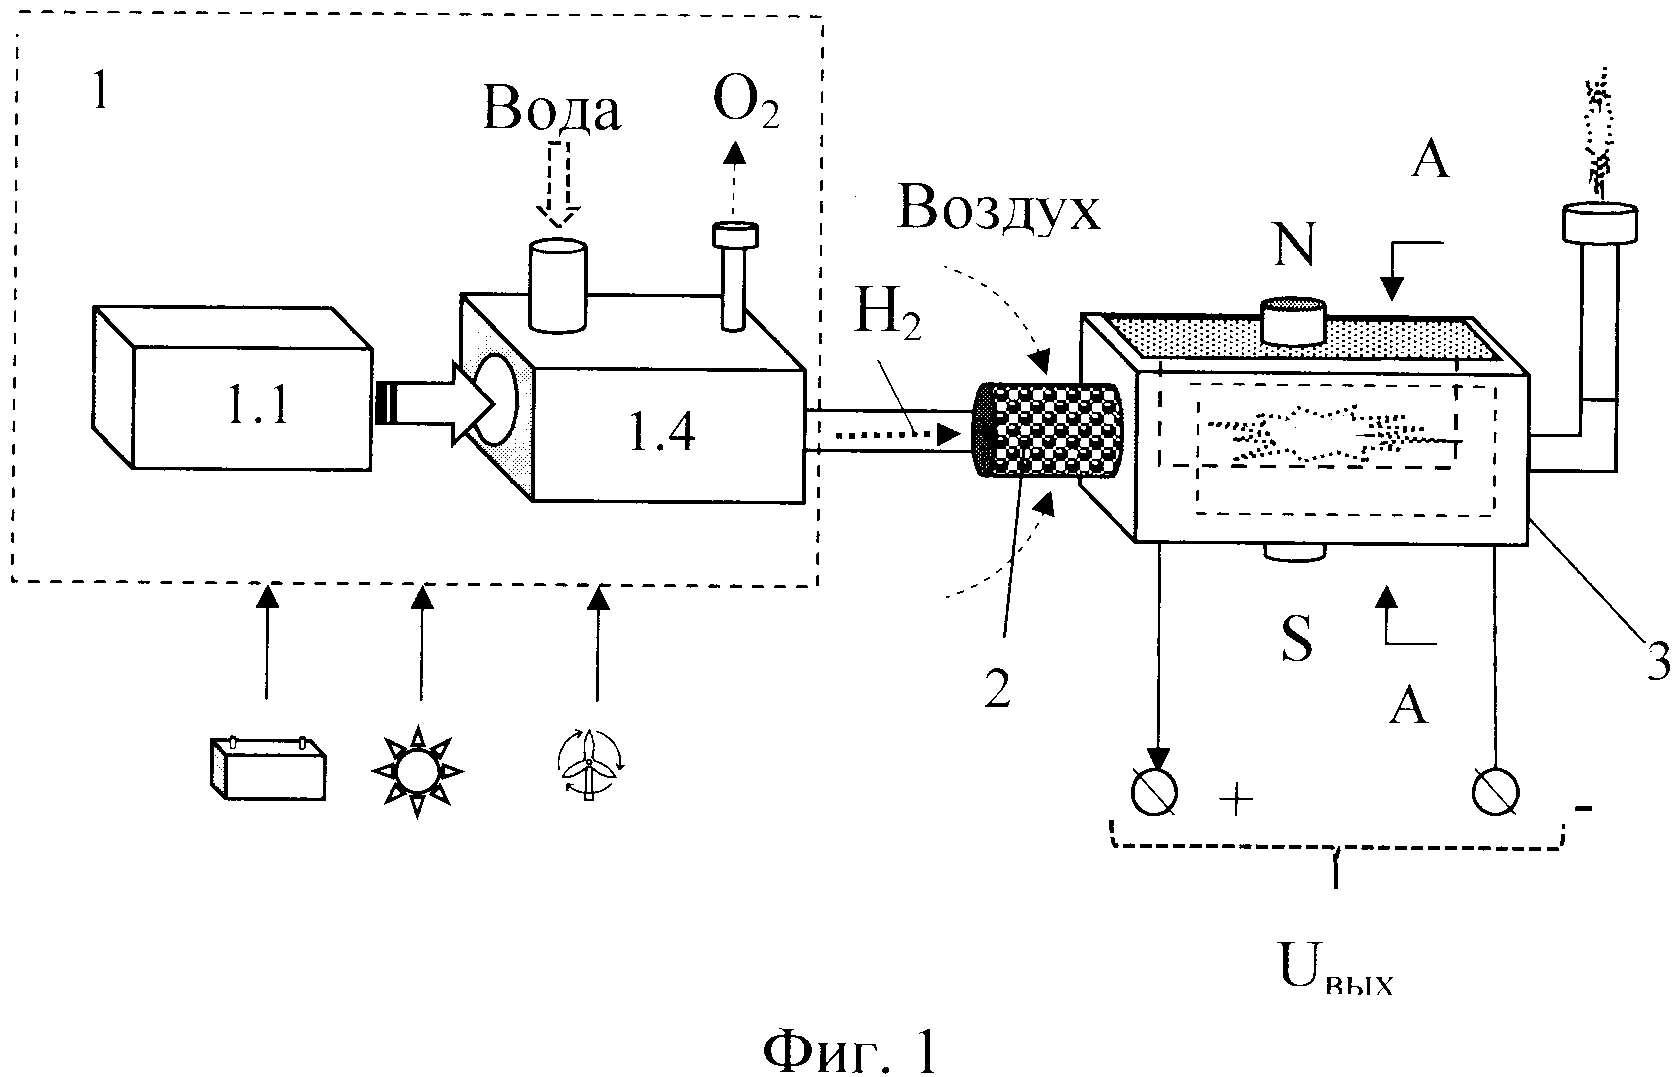 RU2596605C2 - Водородный генератор электрической энергии - Google Patents